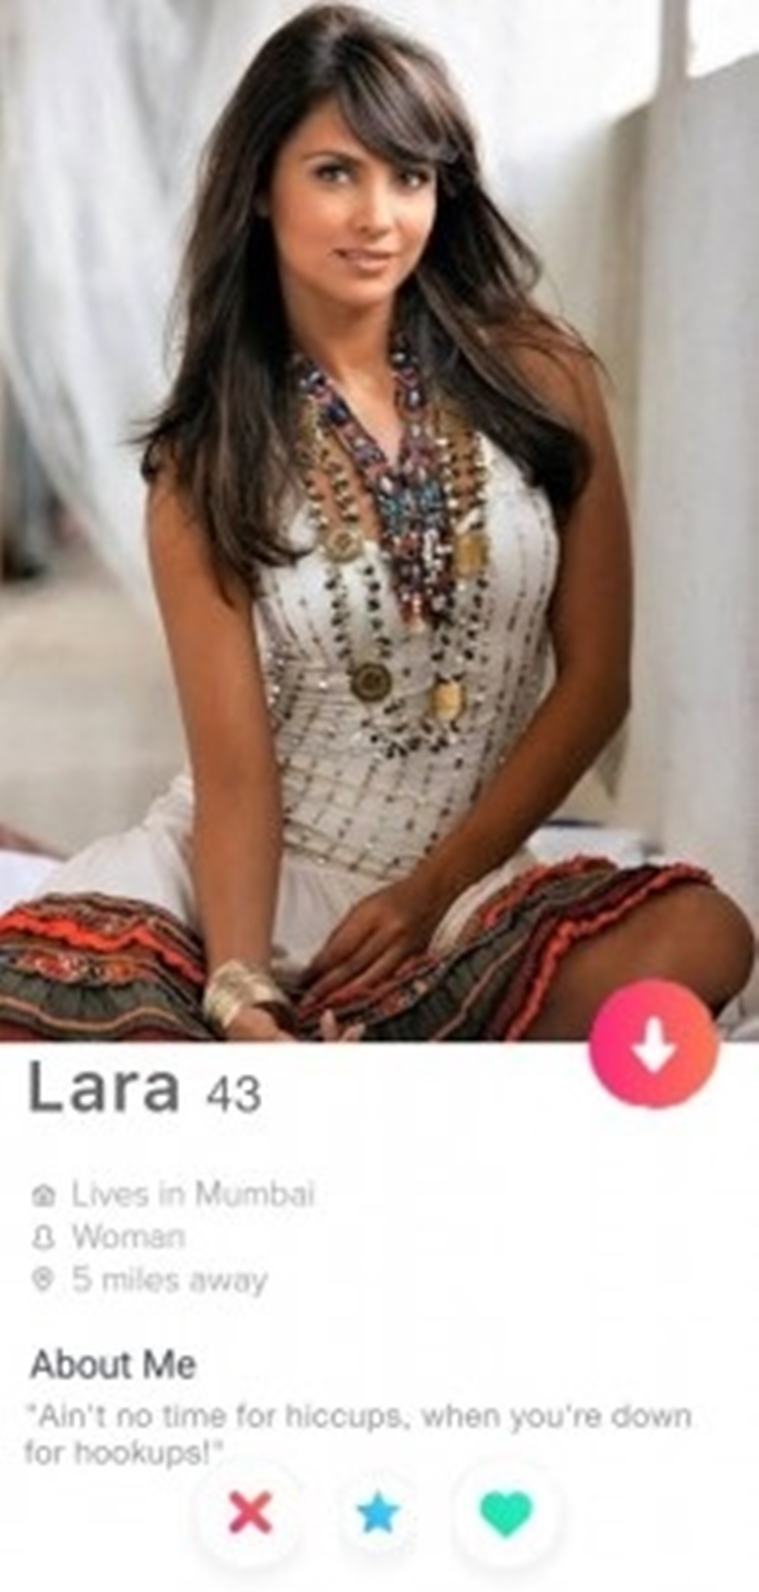 News from lara dutta dating app